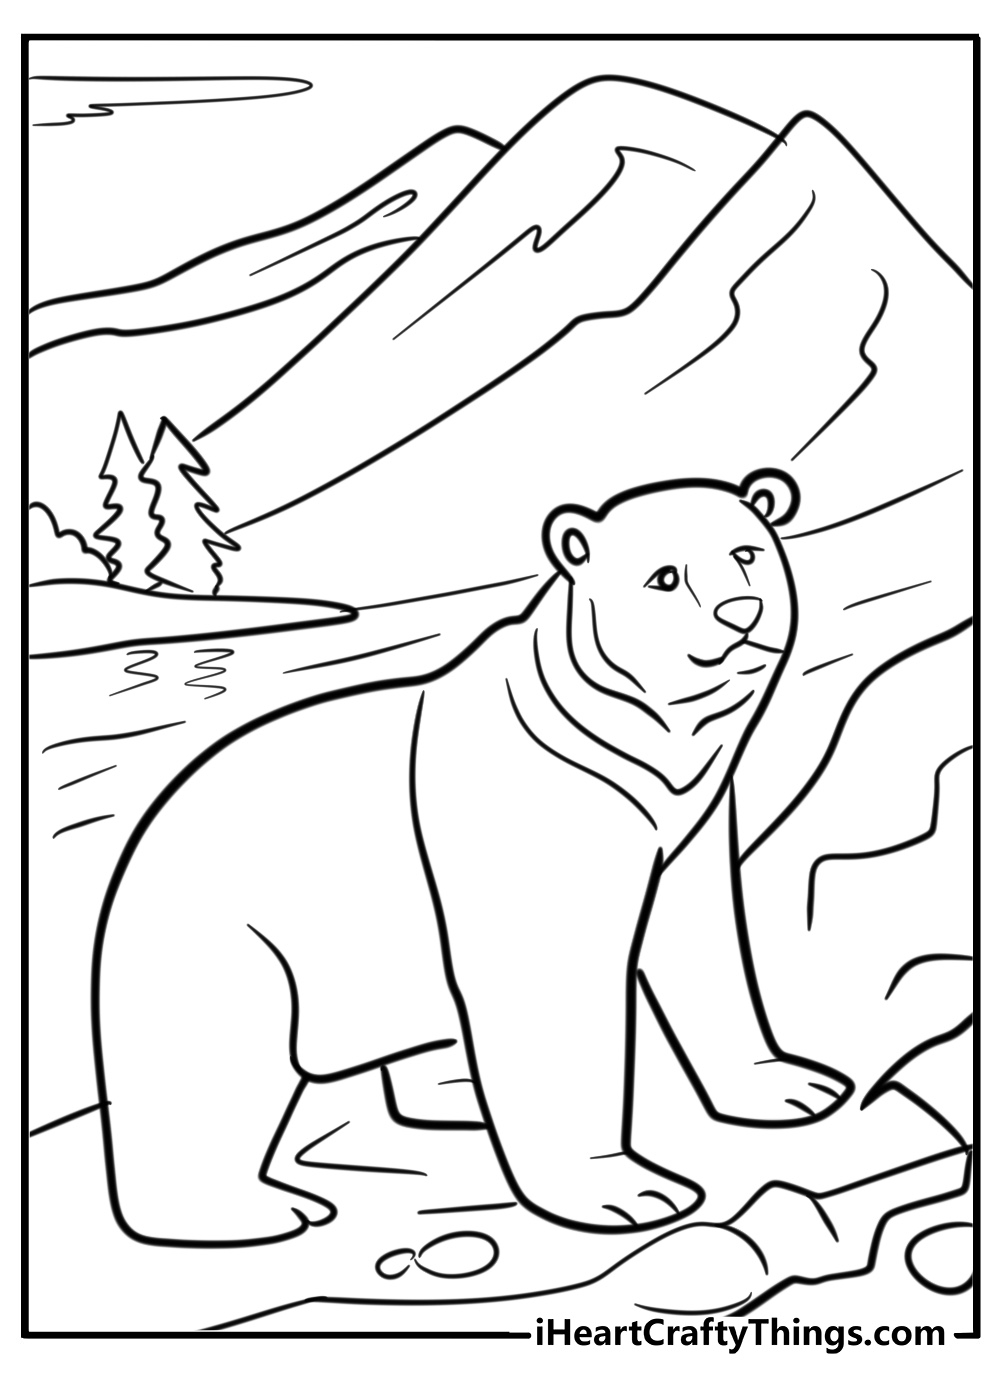 Bear coloring page walking in rocky terrain